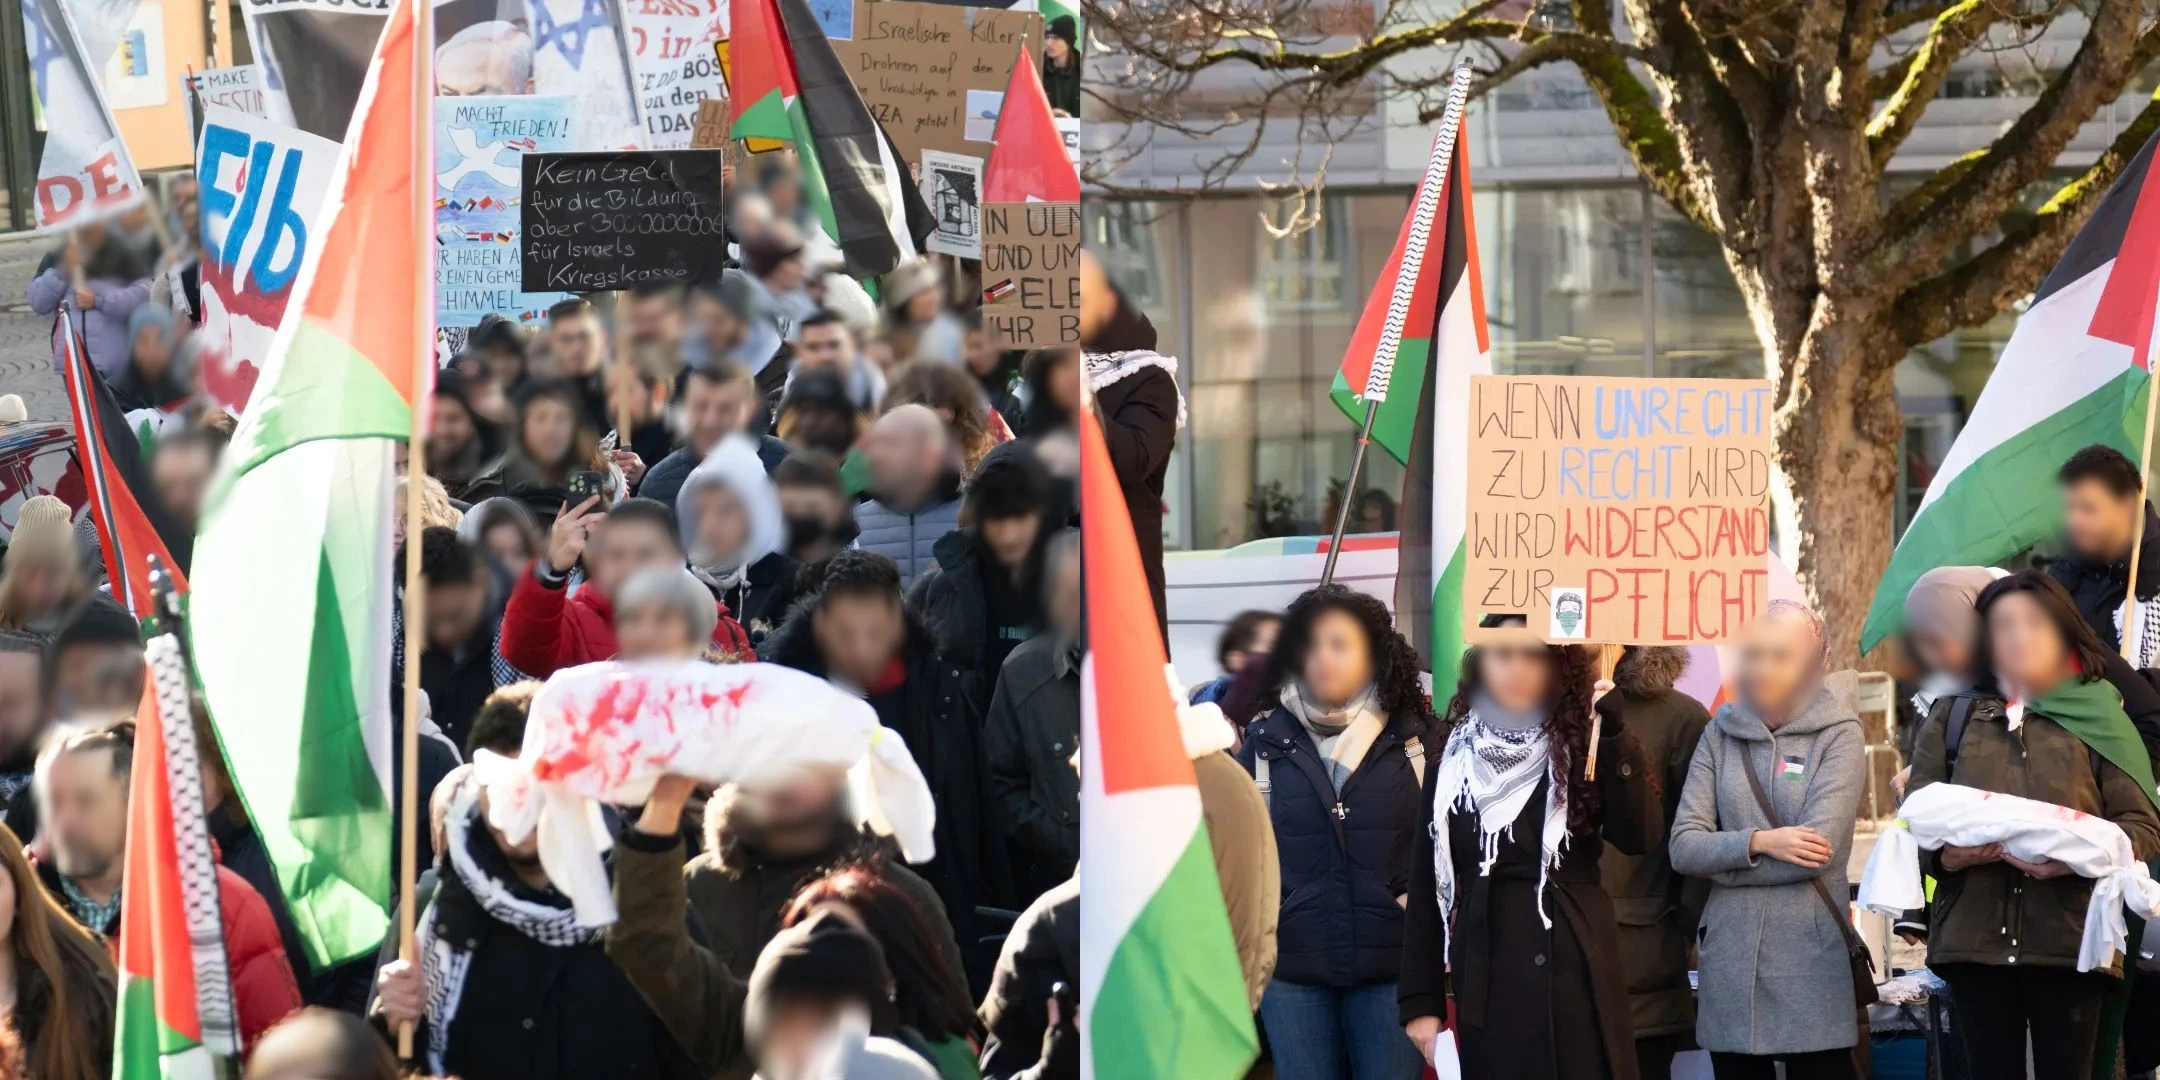 Demonstrationszug bestehend aus einer Menge Menschen mit Palästina-Fahnen und Schildern. Bild eine:r Demonstrant:in mit einem Schild mit dem Text &ldquo;Wenn Unrecht zu Recht wird, wird Widerstand zur Pflicht.&rdquo;